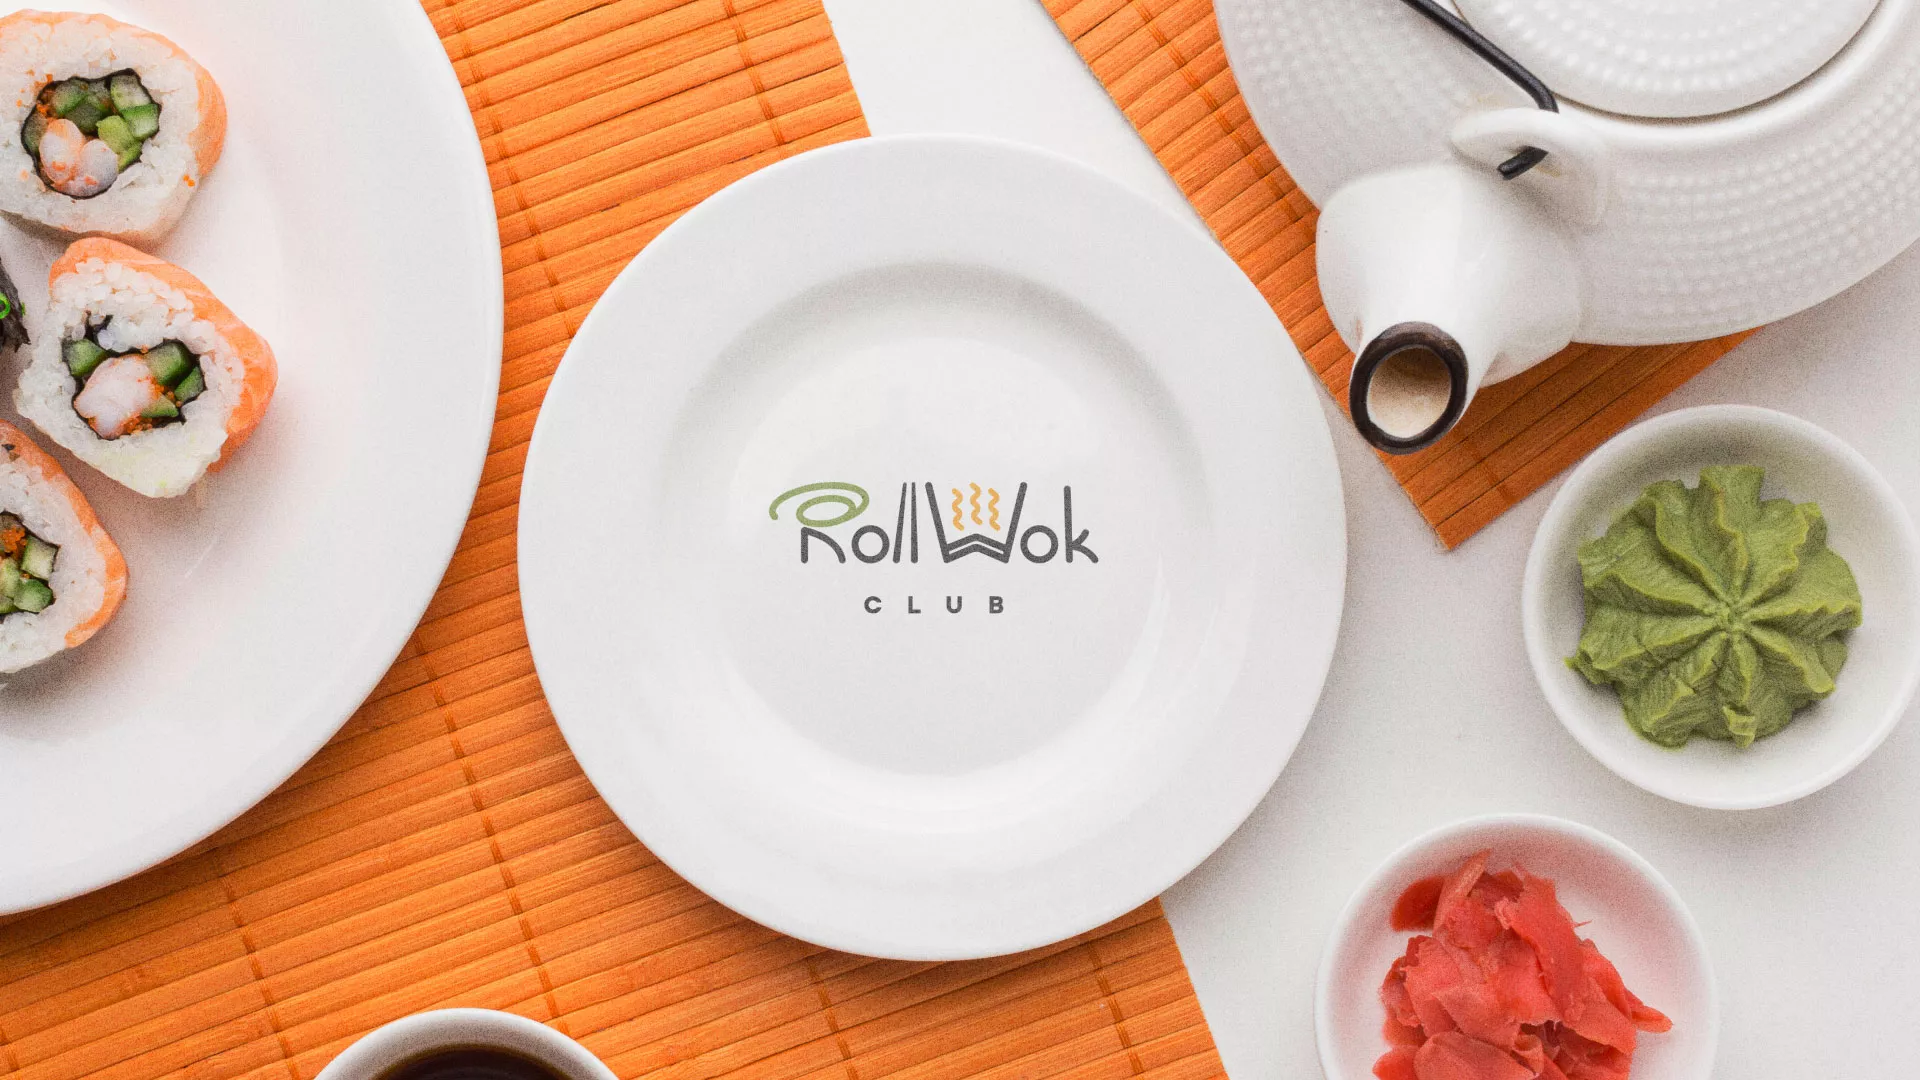 Разработка логотипа и фирменного стиля суши-бара «Roll Wok Club» в Петровске-Забайкальском